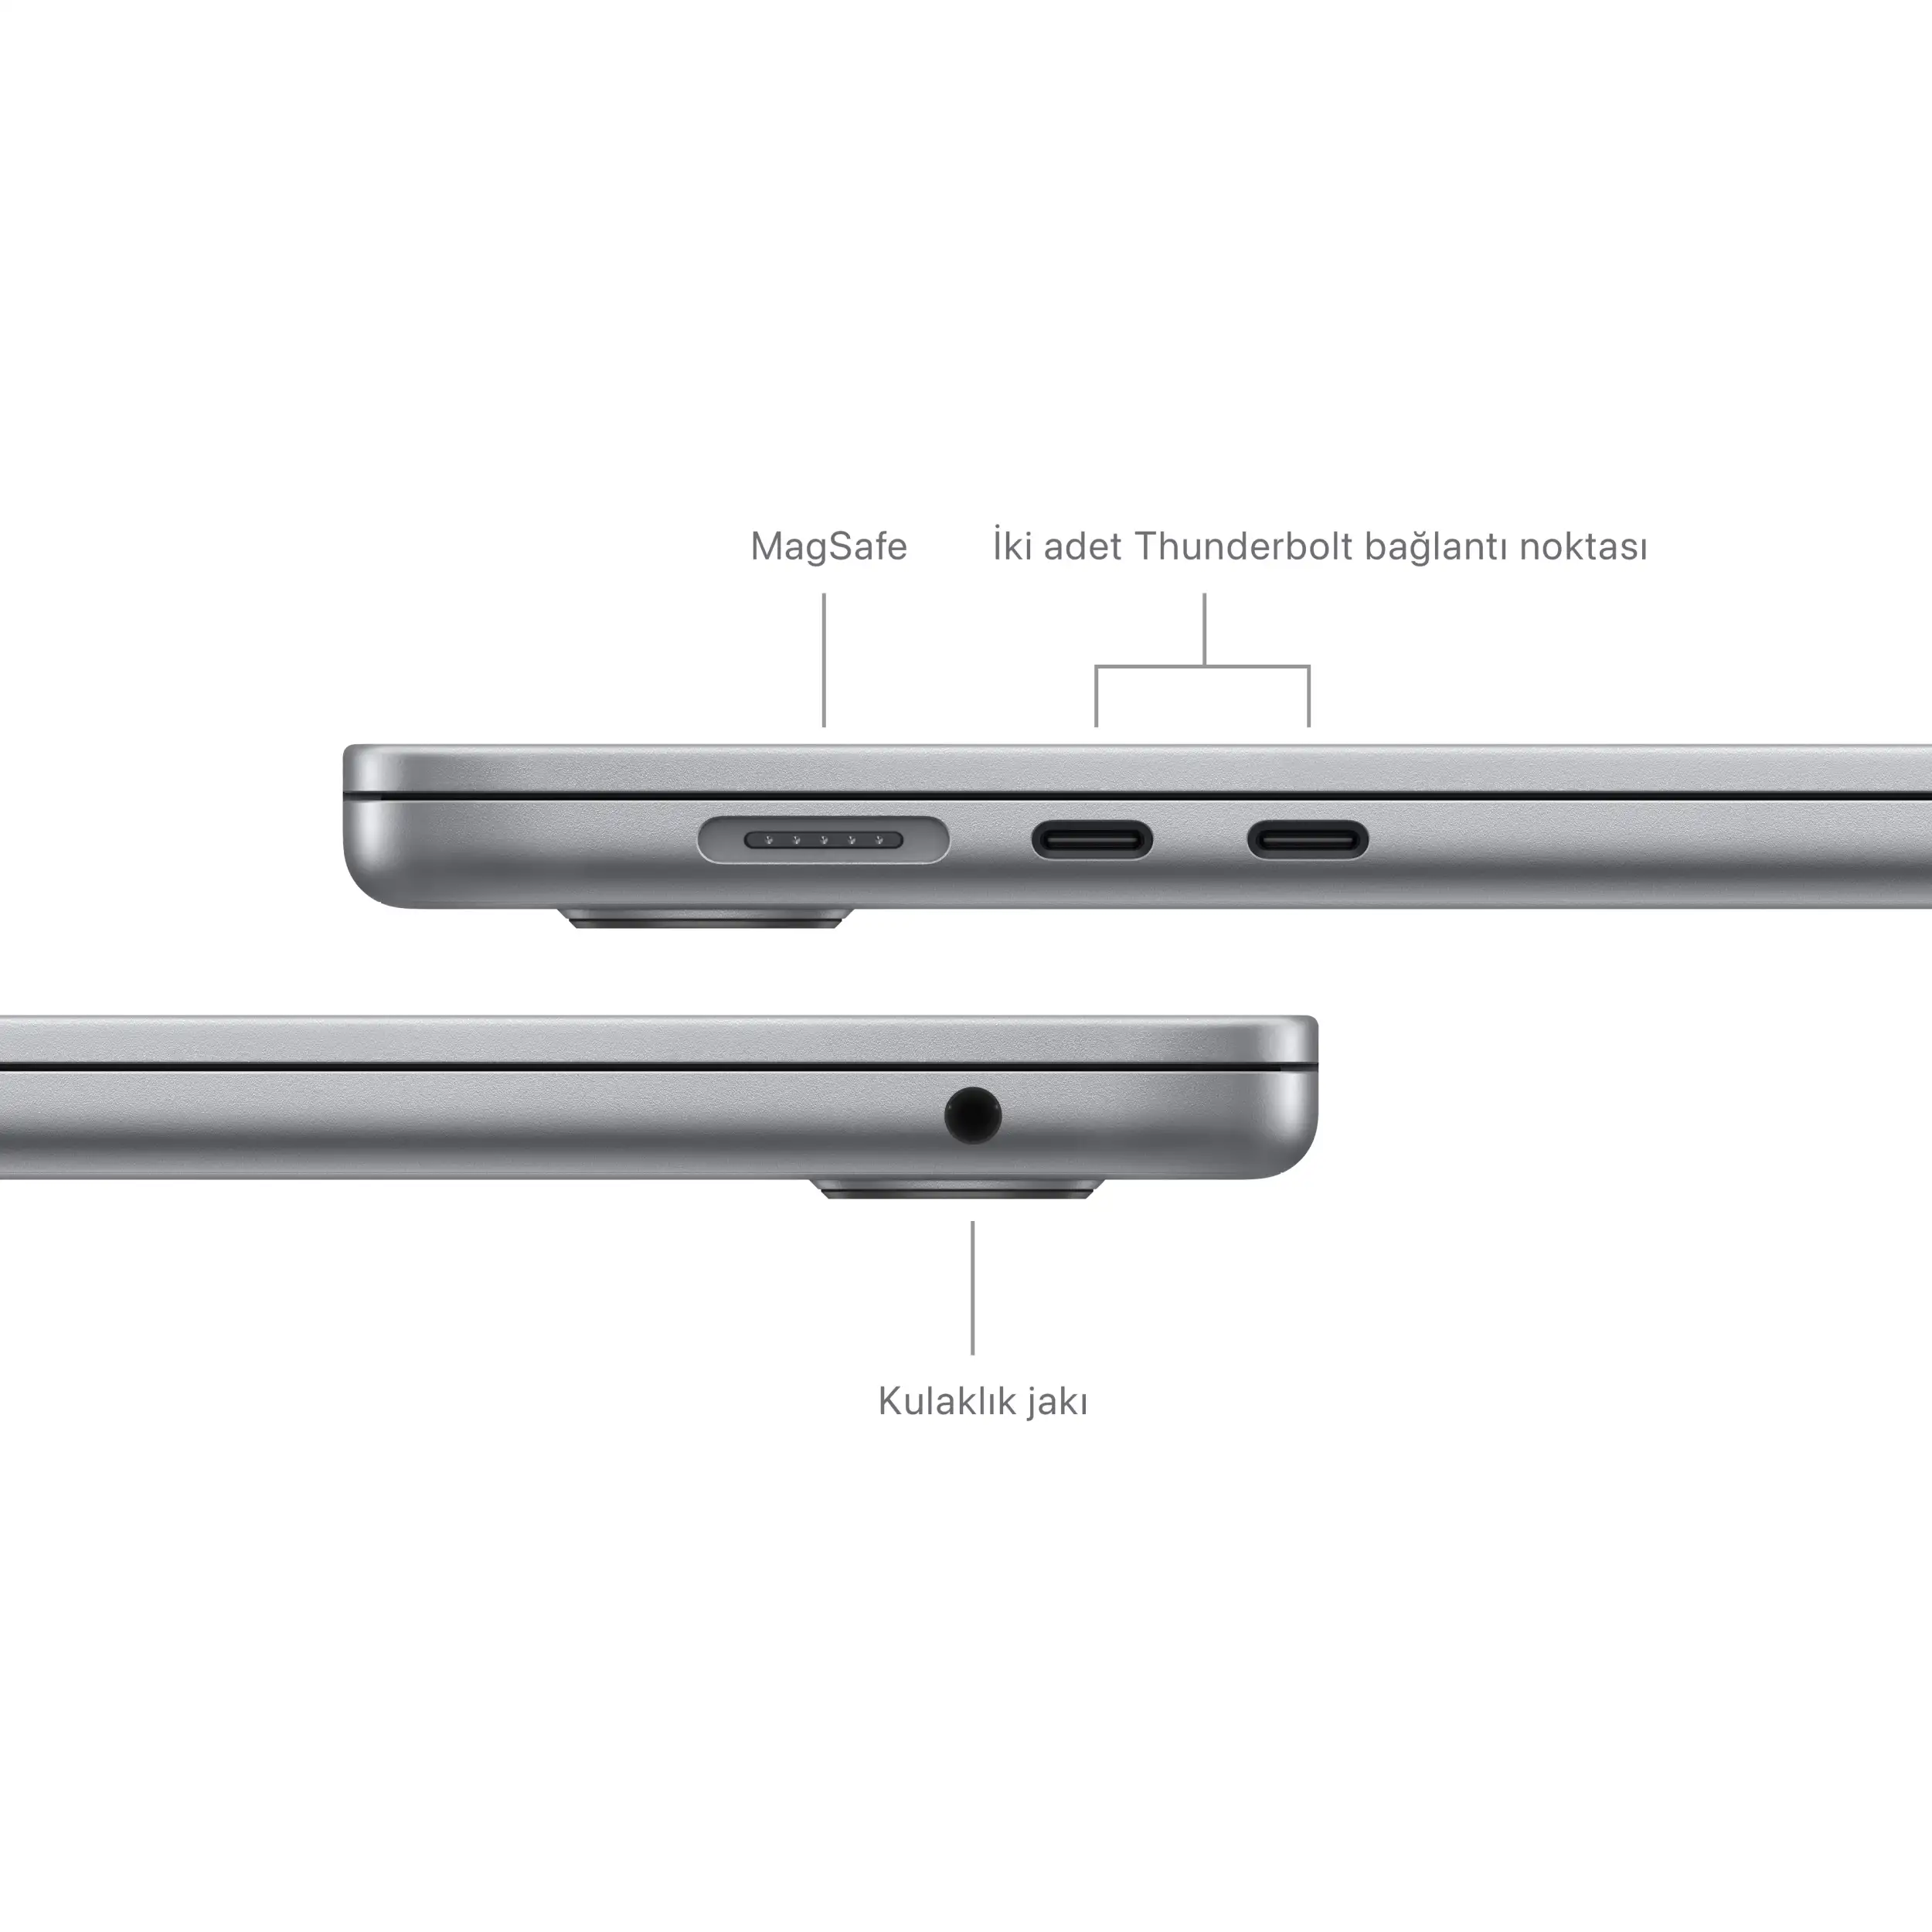 MacBook Air 15 inc M3 8CPU 10GPU 16GB 512GB Uzay Grisi MXD13TU/A